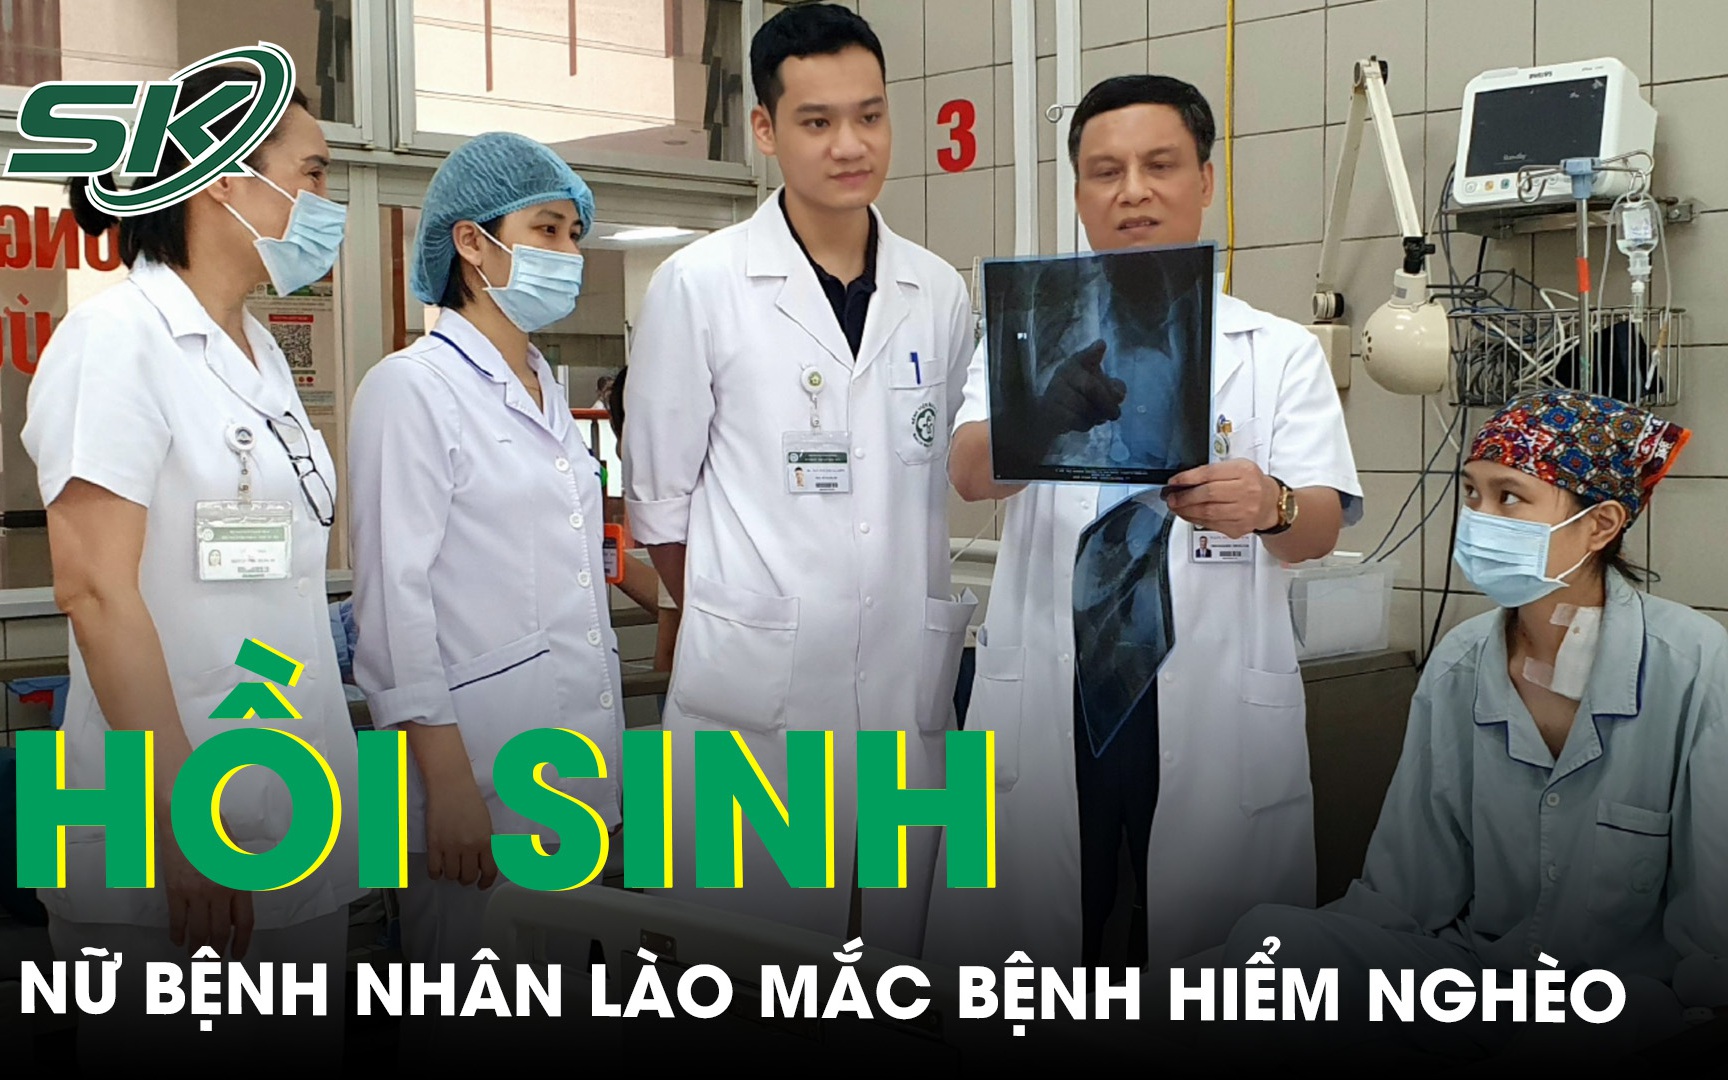 Bệnh nhân người nước ngoài mắc bệnh hiểm nghèo được các bác sĩ BV Bạch Mai 